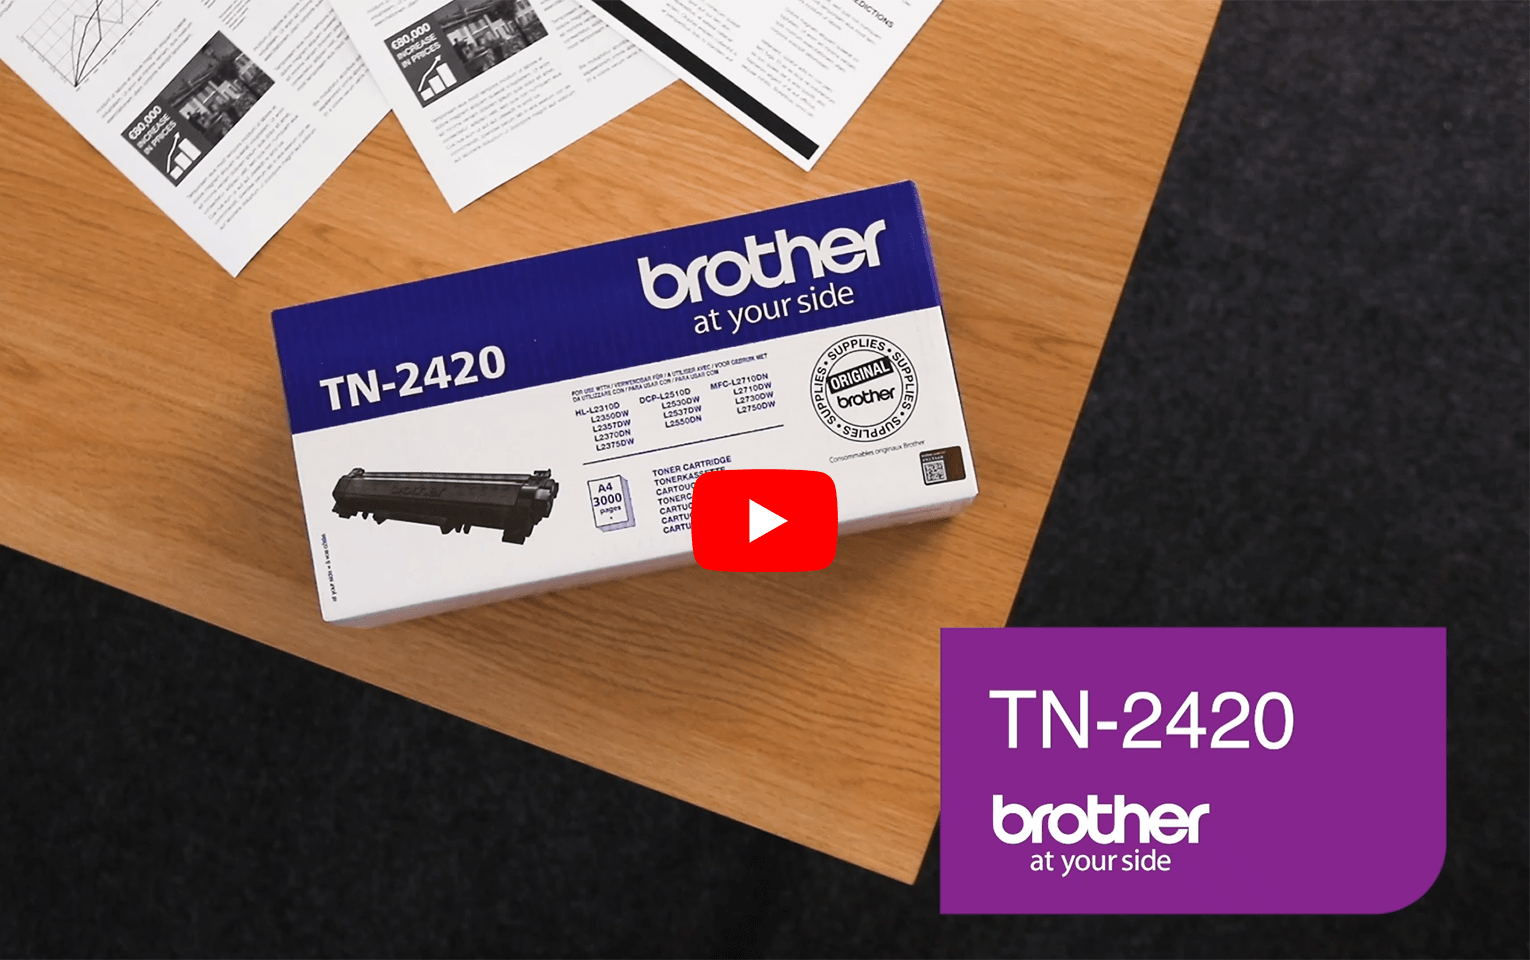 Toner brother tn-2420 - Der Vergleichssieger unserer Tester